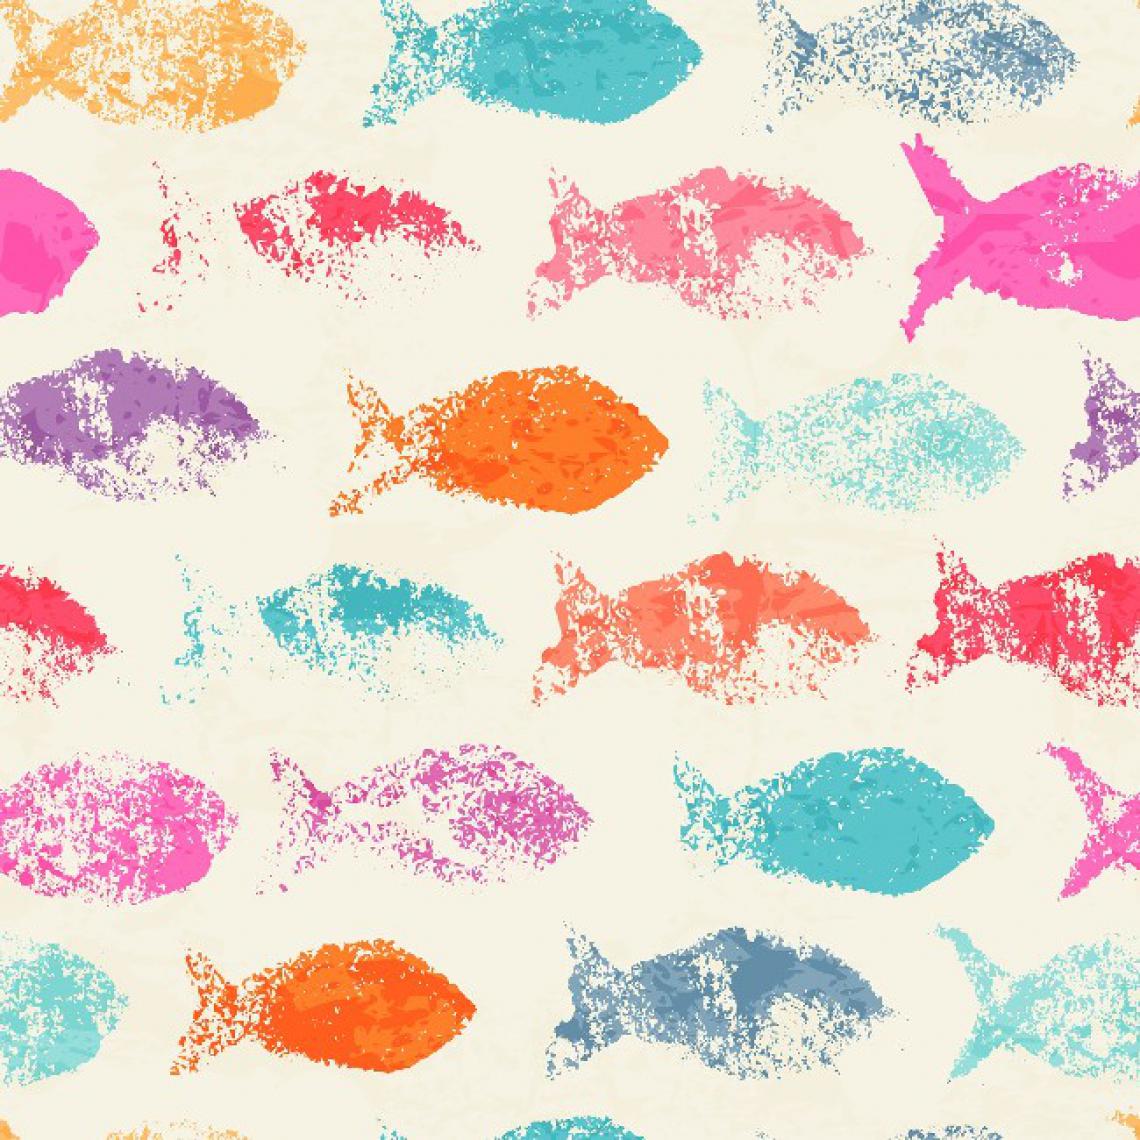 Homemania - HOMEMANIA Tapis Imprimé Colorful Fish - pour les enfants - Décoration de Maison - antidérapants - Pour Salon, séjour, chambre à coucher - Multicolore en Polyester, Coton, 80 x 50 cm - Tapis